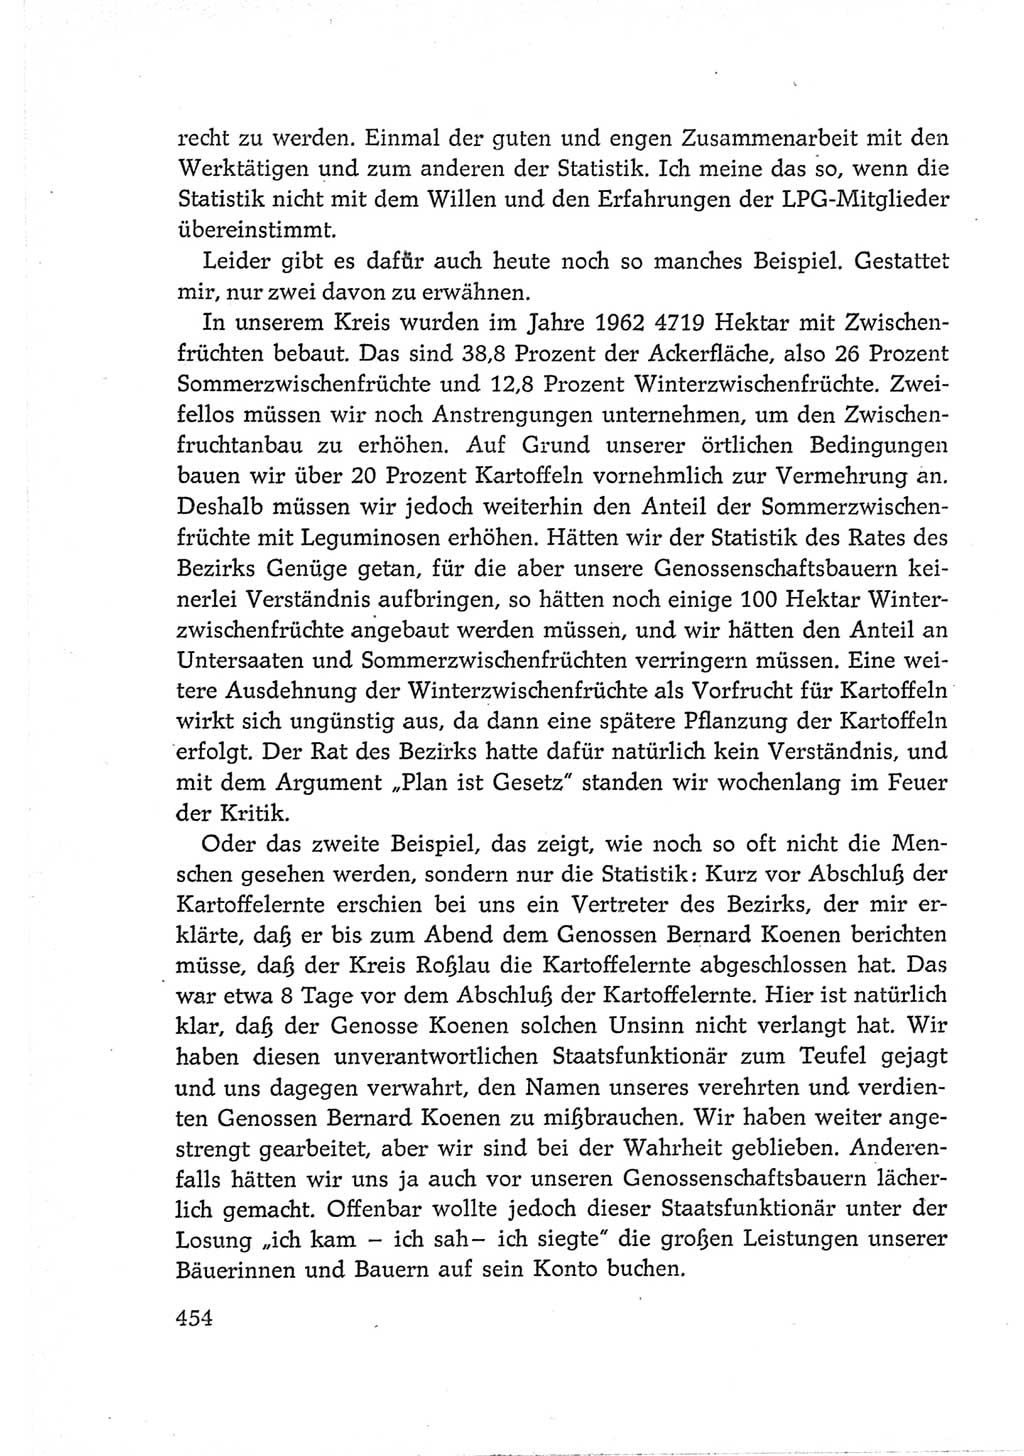 Protokoll der Verhandlungen des Ⅵ. Parteitages der Sozialistischen Einheitspartei Deutschlands (SED) [Deutsche Demokratische Republik (DDR)] 1963, Band Ⅲ, Seite 454 (Prot. Verh. Ⅵ. PT SED DDR 1963, Bd. Ⅲ, S. 454)